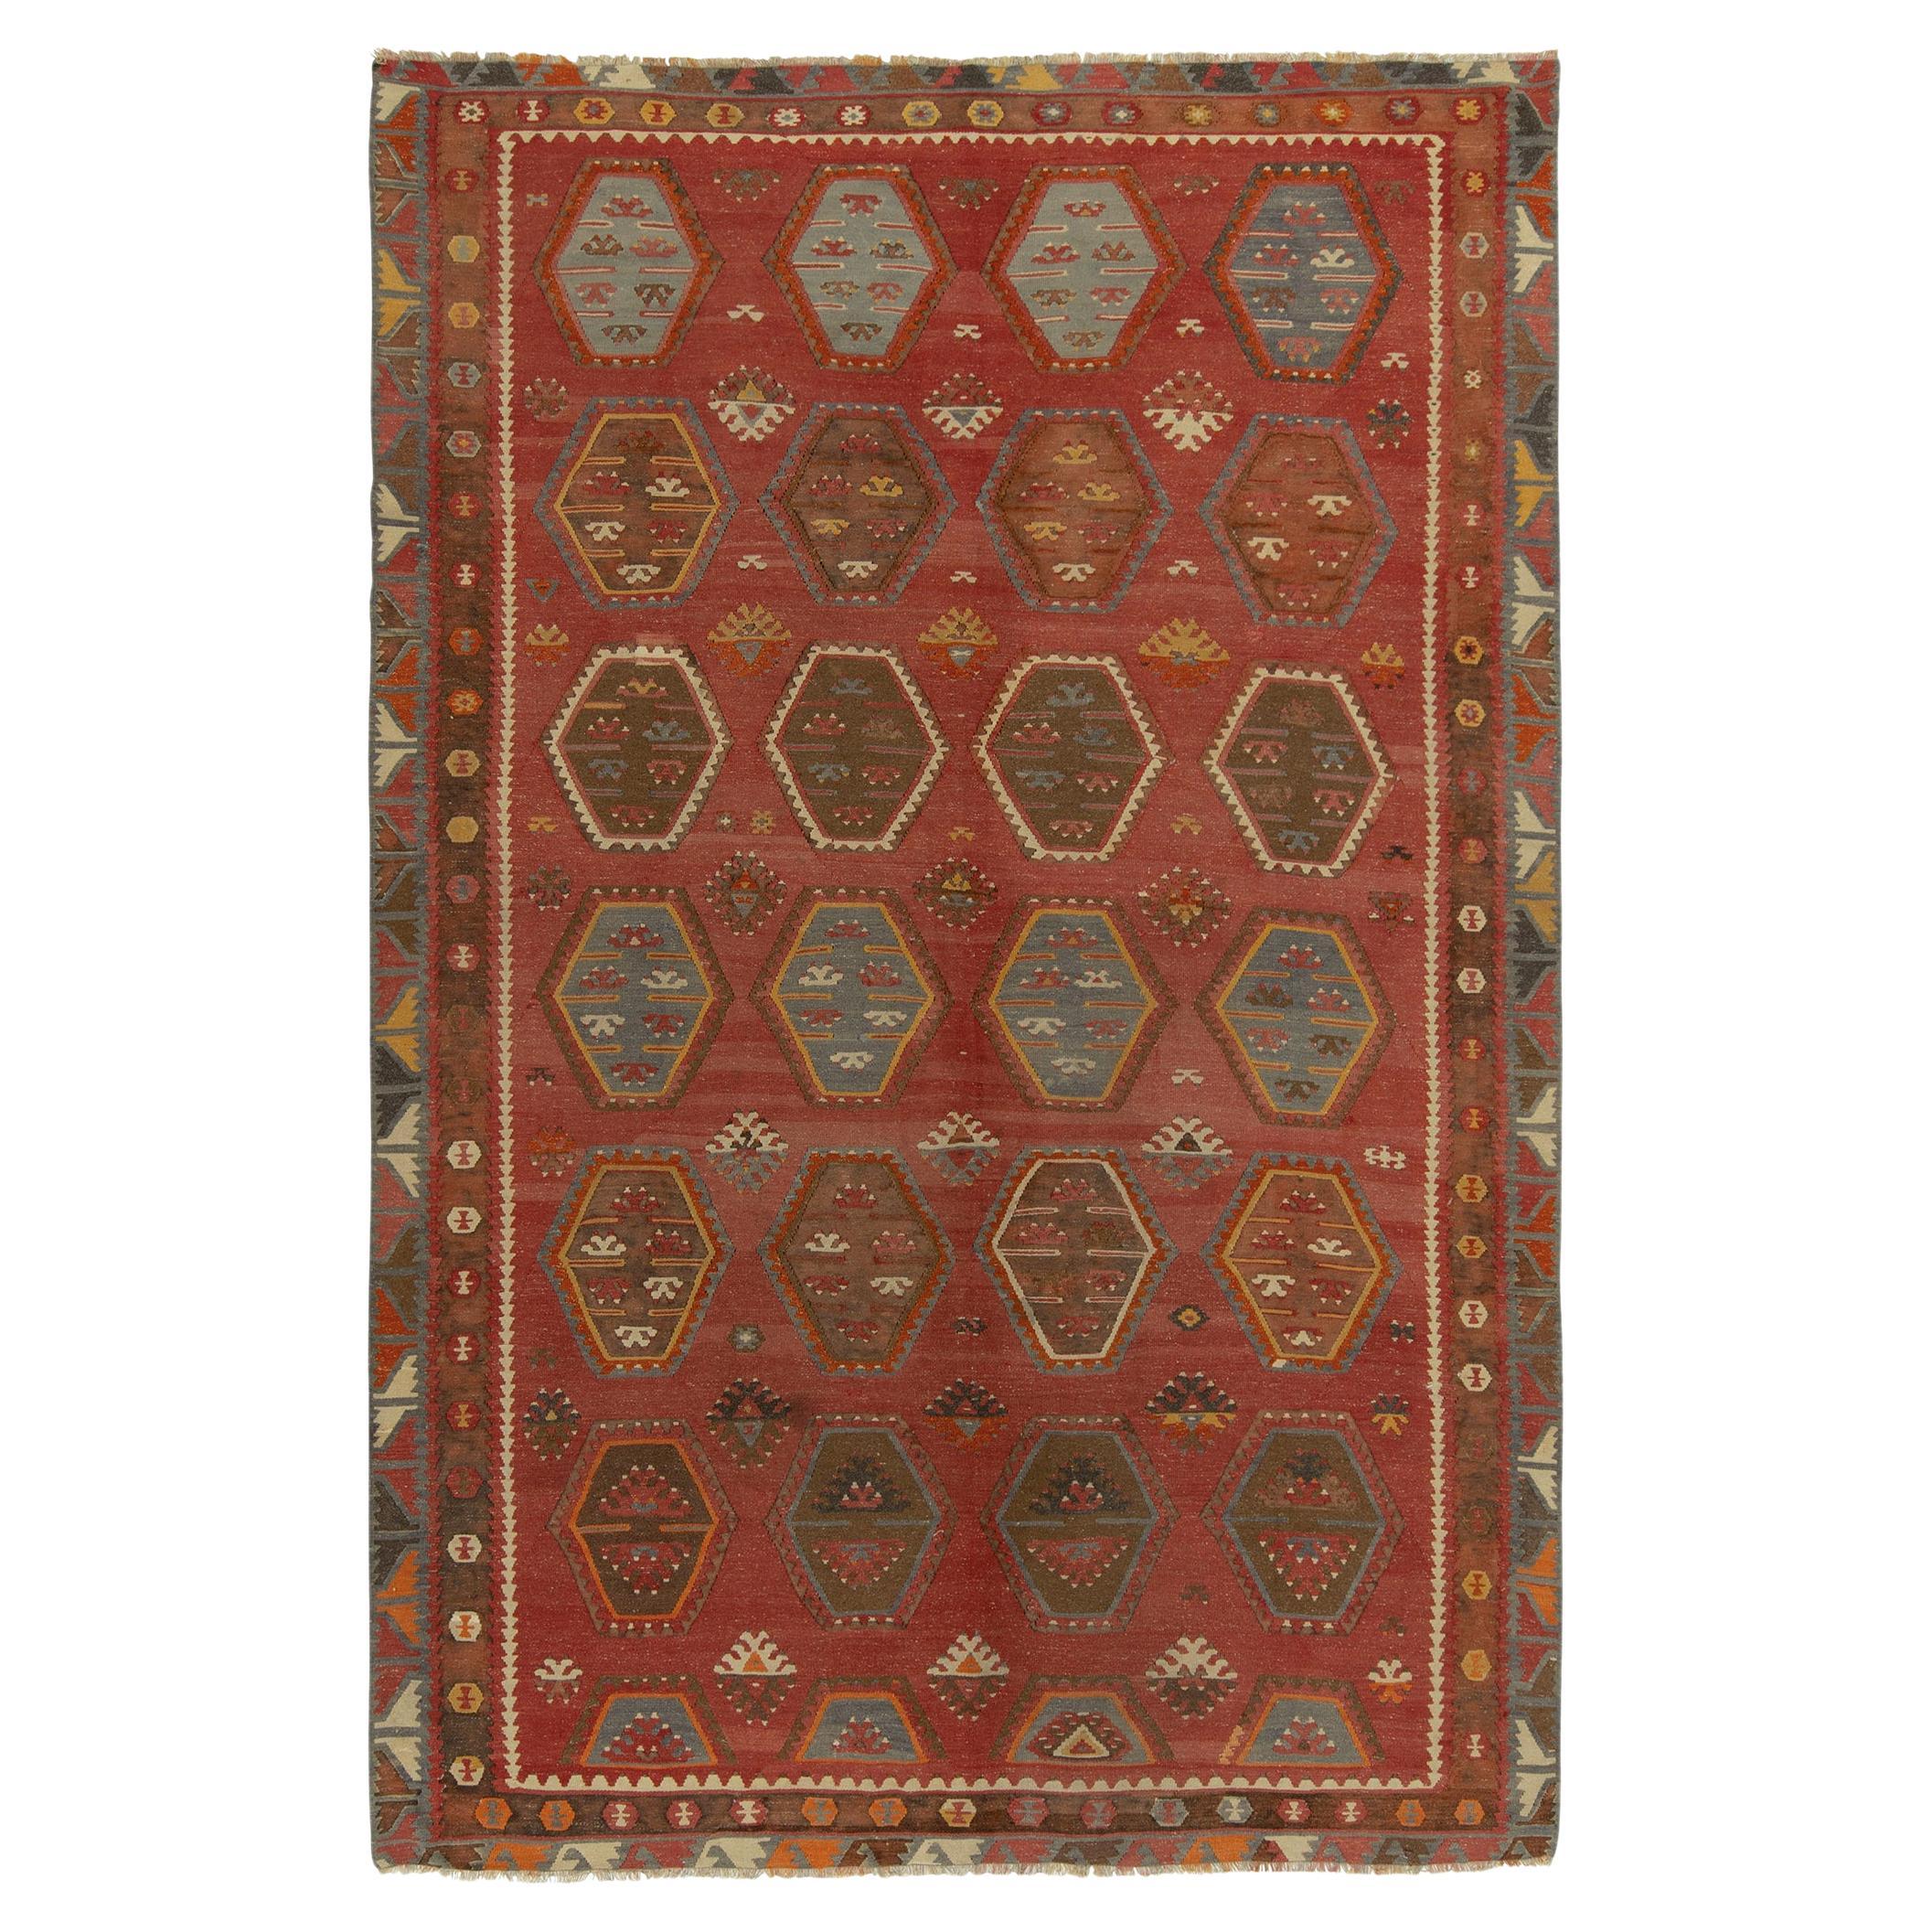 Vintage Turkish Kilim rug in Red & Brown Tribal Geometric Pattern by Rug & Kilim For Sale